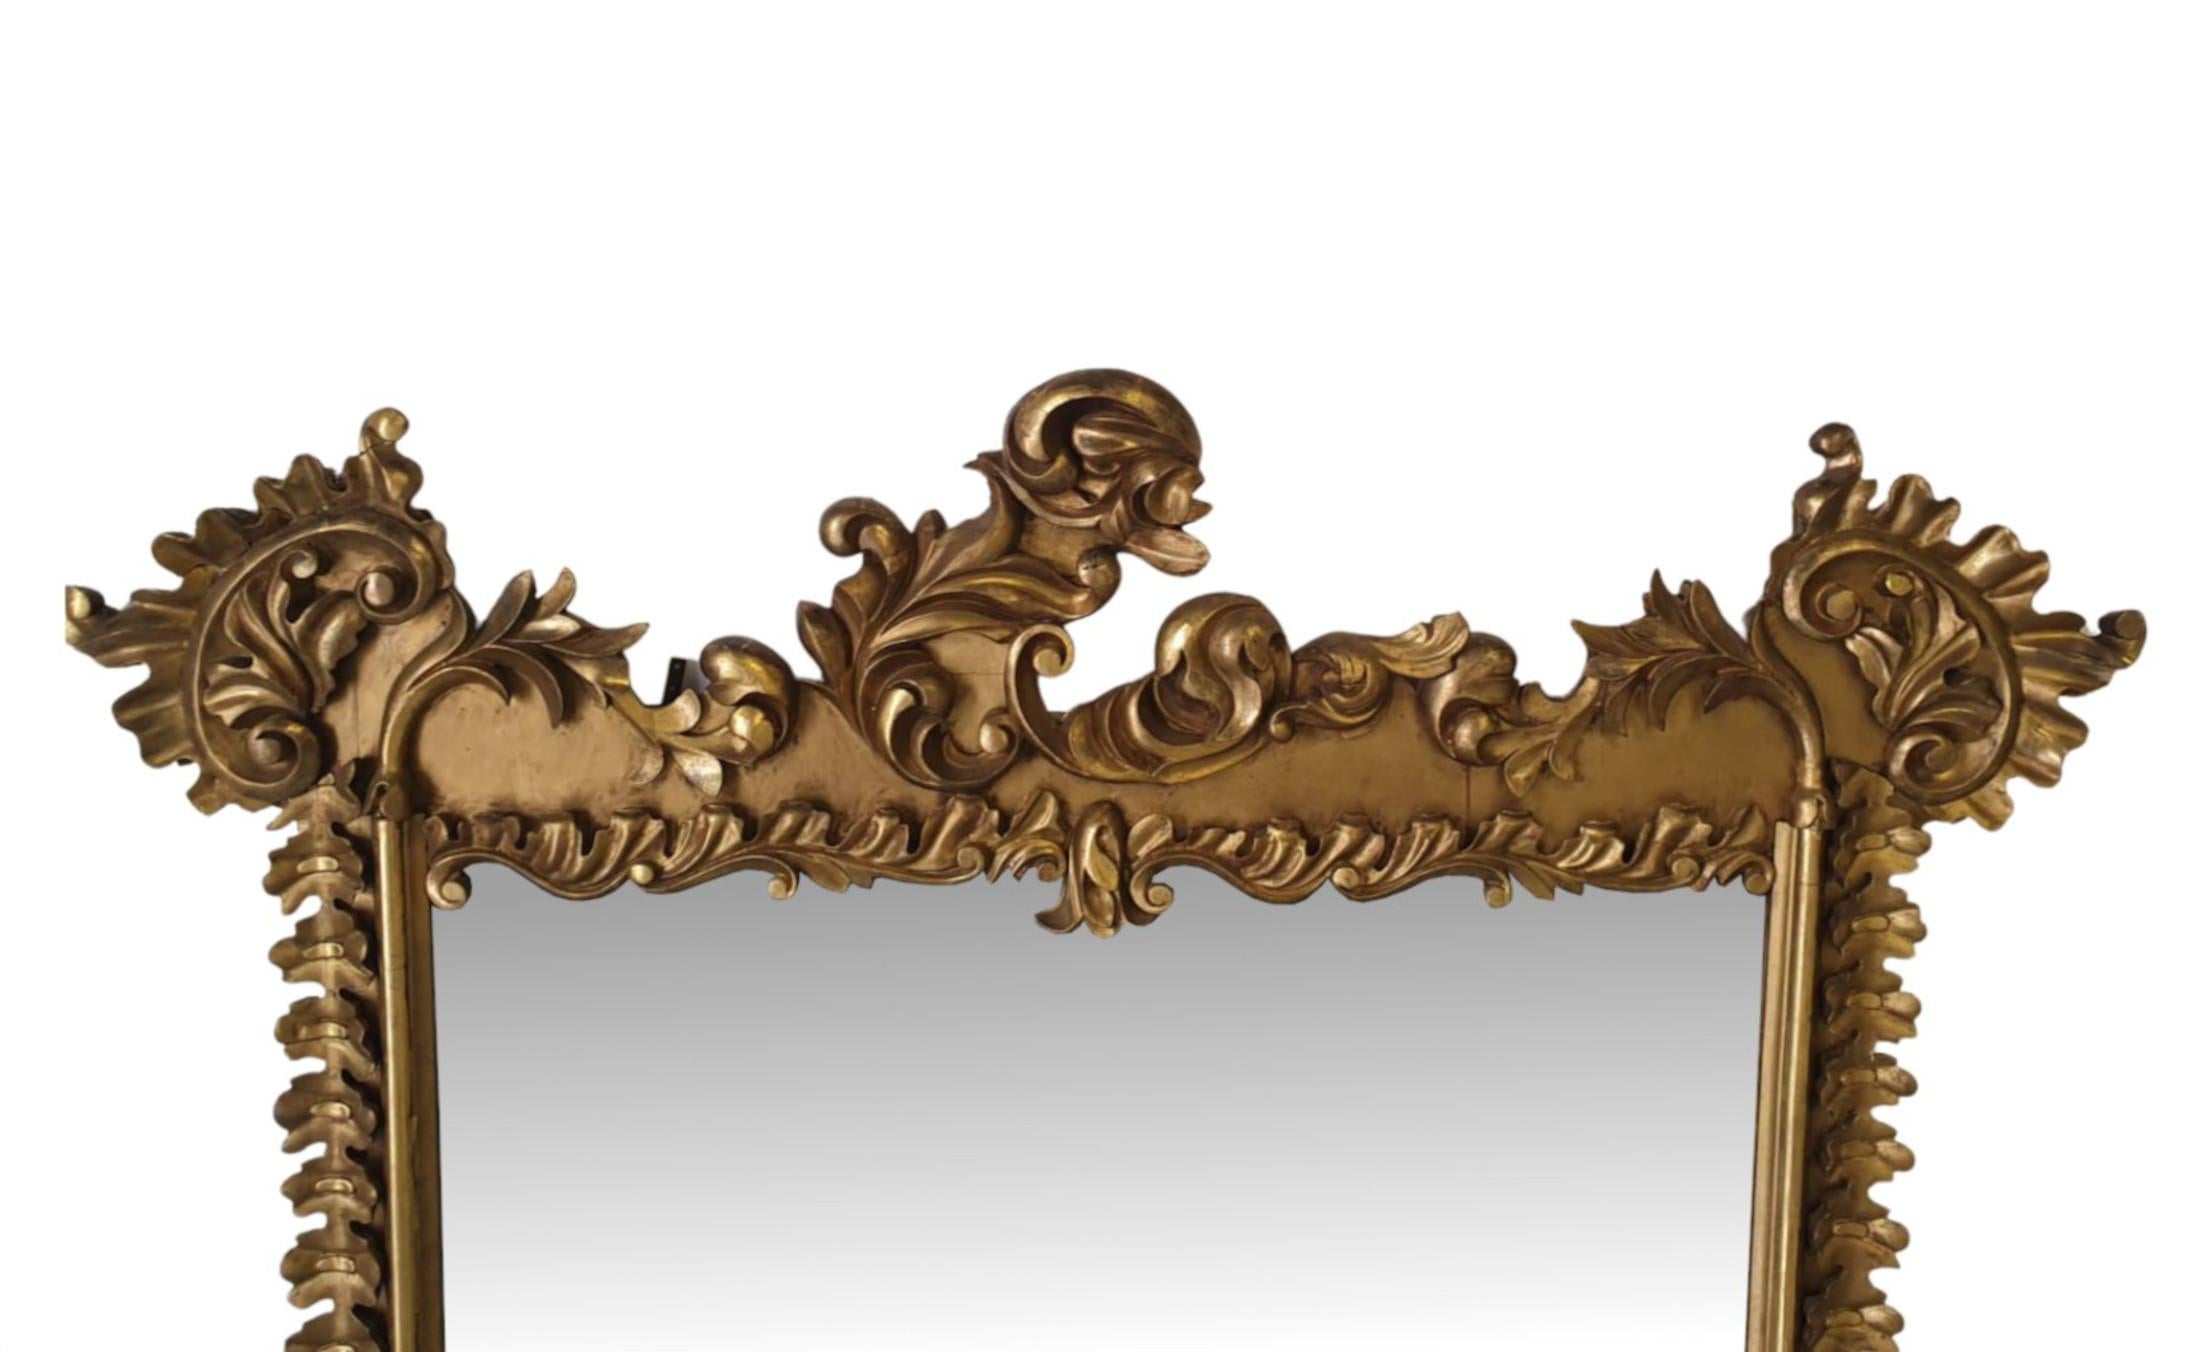 Ein sehr schöner irischer William IV. Übermantelspiegel aus Goldholz aus dem frühen 19. Die rechteckige Spiegelglasplatte ist in einen elegant geformten und profilierten Rahmen aus vergoldetem Holz eingefasst, der durchgängig mit Blattwerk verziert